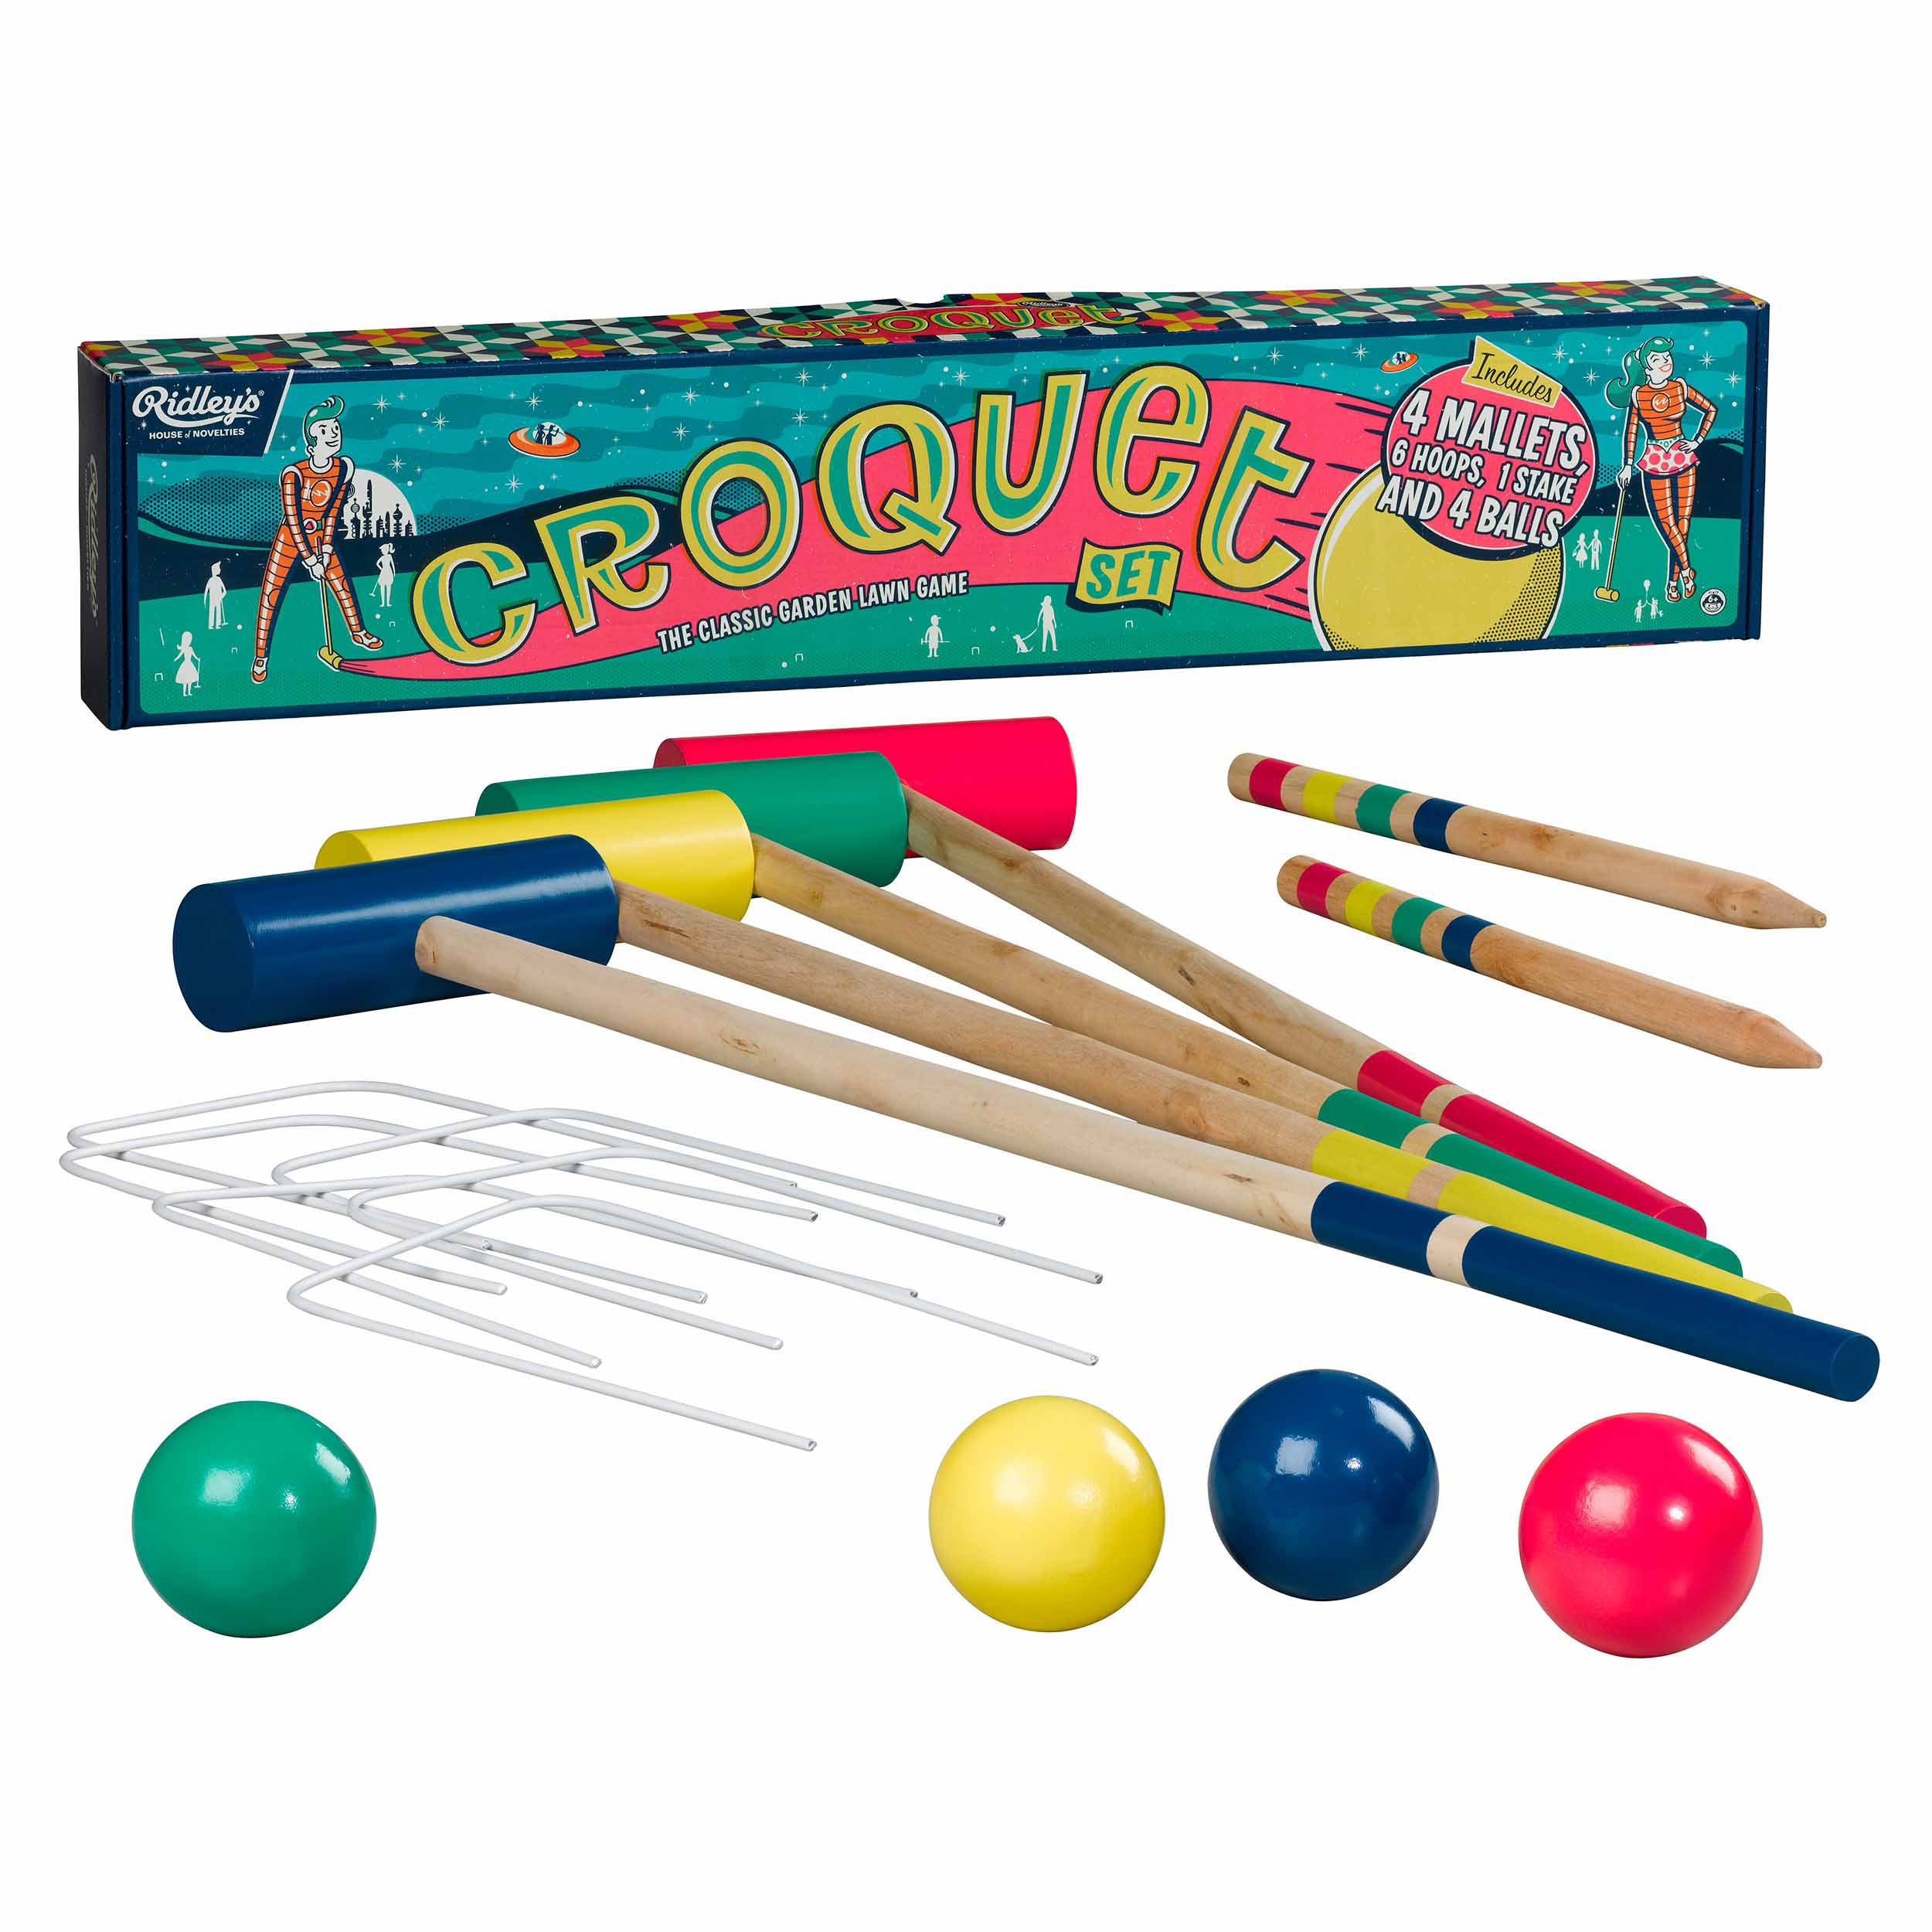 ridley"s games croquet set